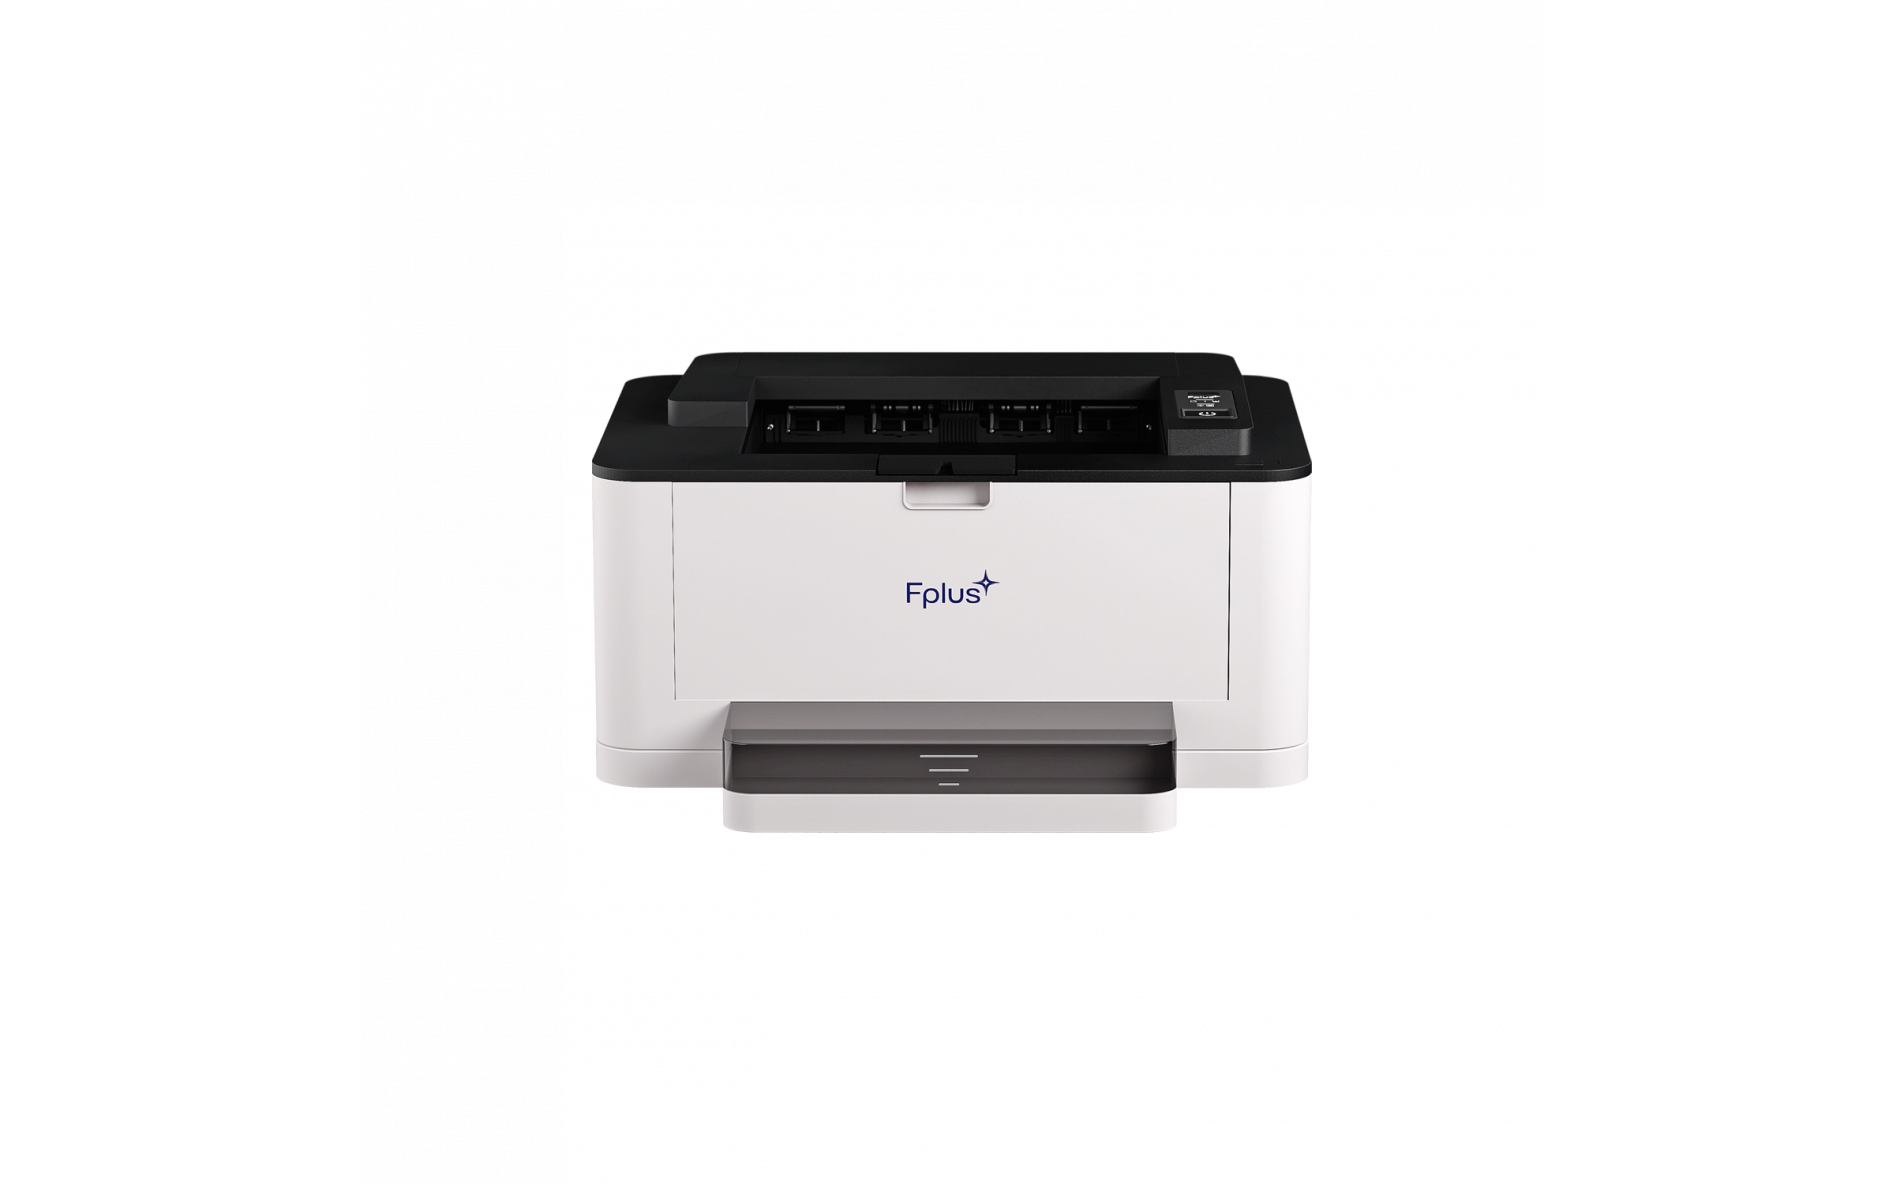 Принтер лазерный Fplus PB301DNW, A4, ч/б, 30 стр/мин (A4 ч/б), 1200x1200 dpi, дуплекс, сетевой, Wi-Fi, USB, белый/черный (PB301DNW), цвет белый/черный